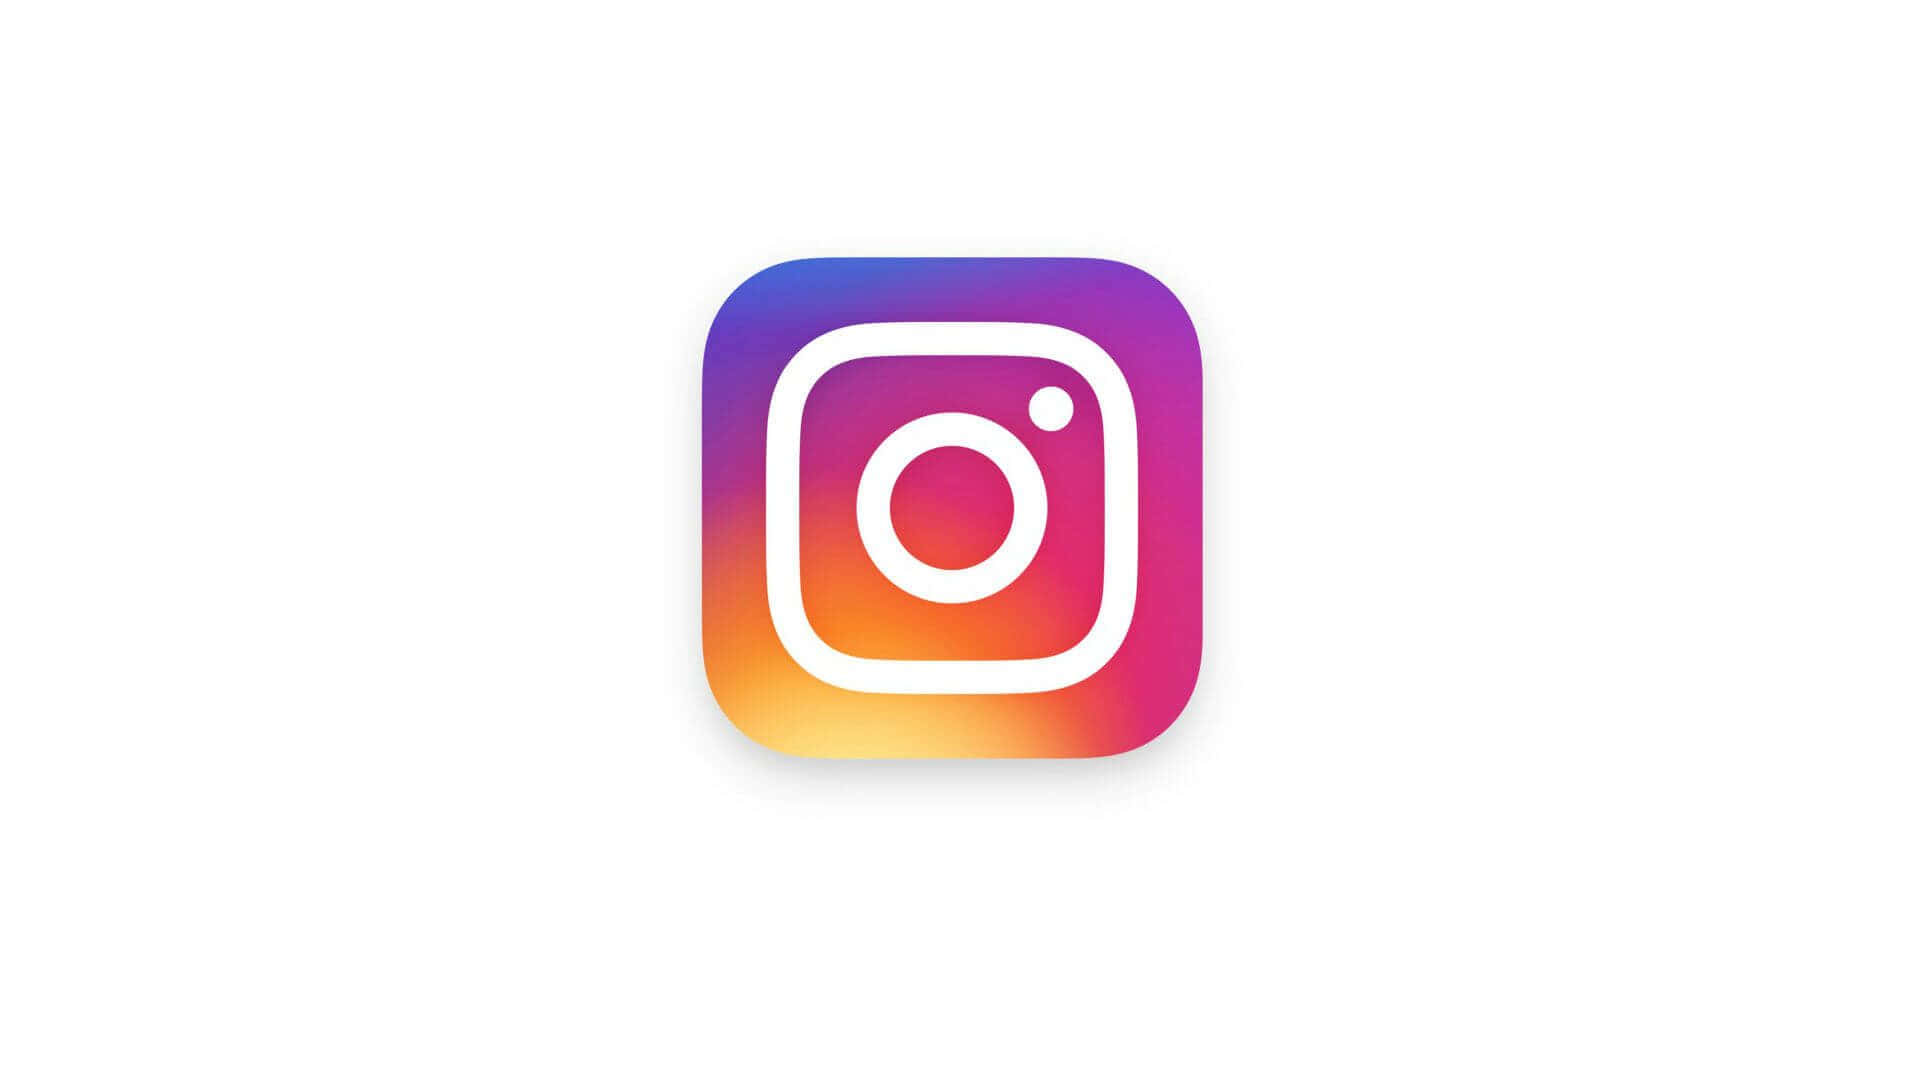 Aesthetic Instagram New Logo 2019 Background